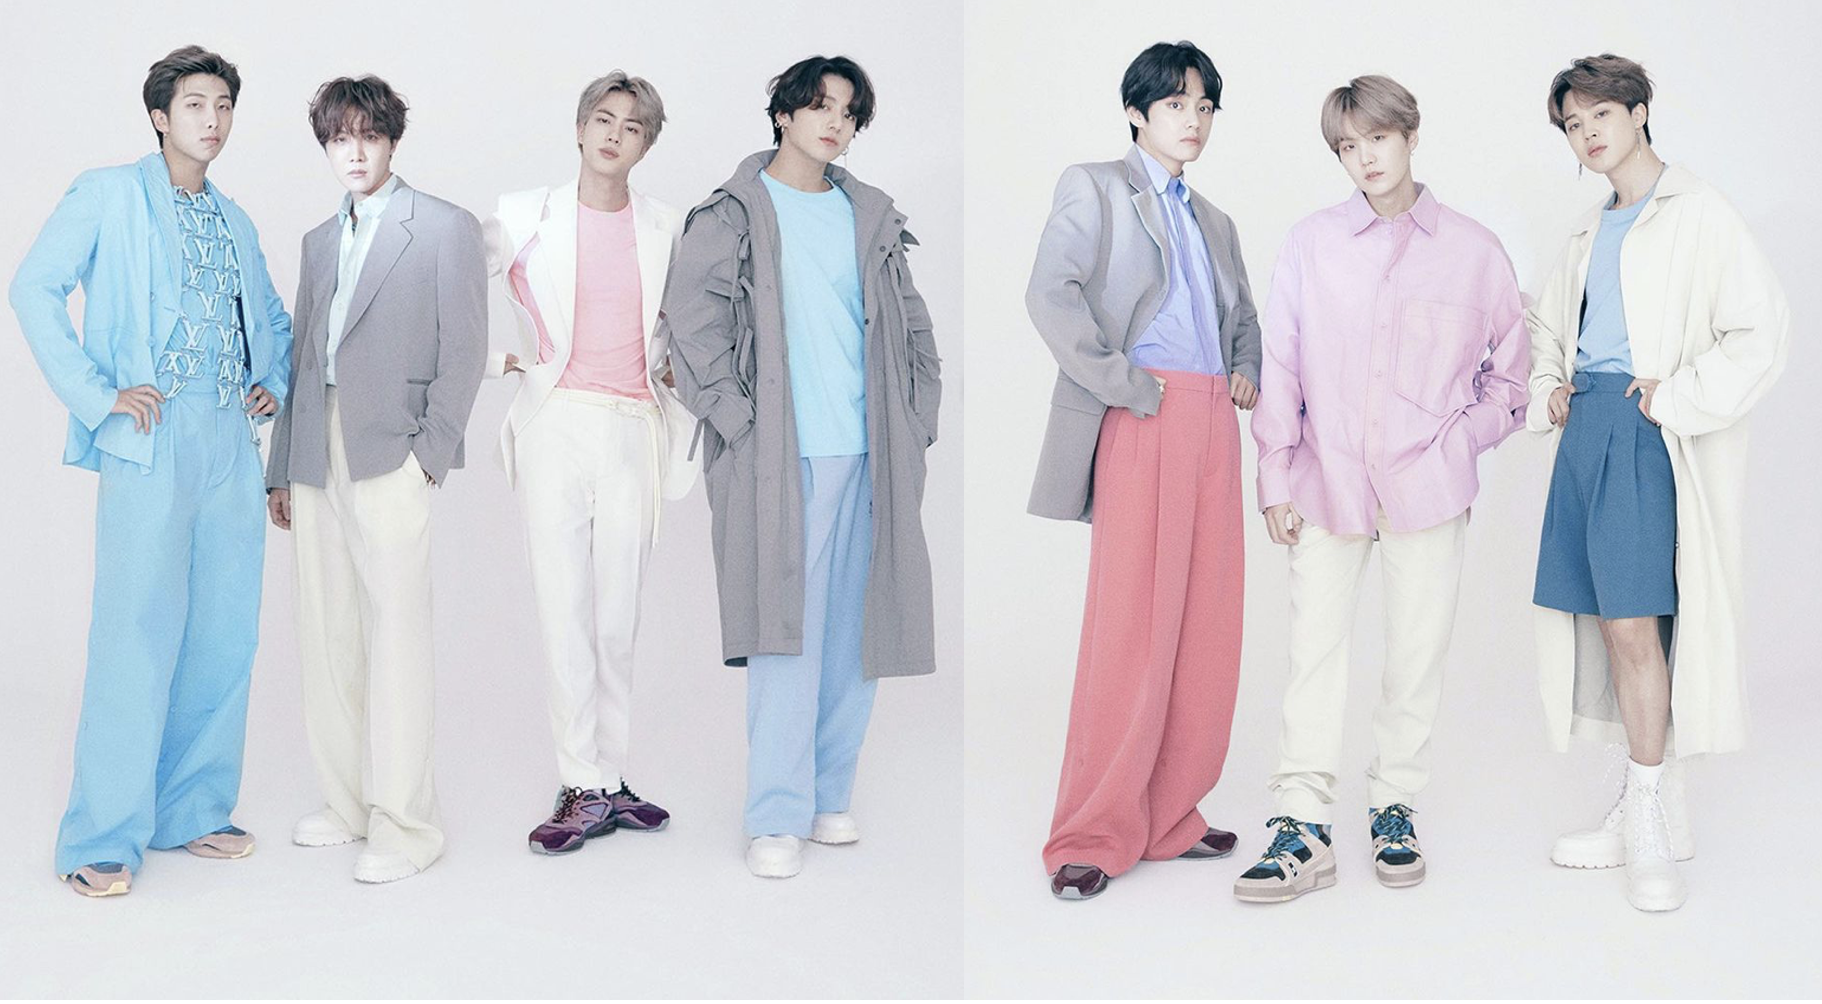 BTS Announced As New Louis Vuitton Brand Ambassadors